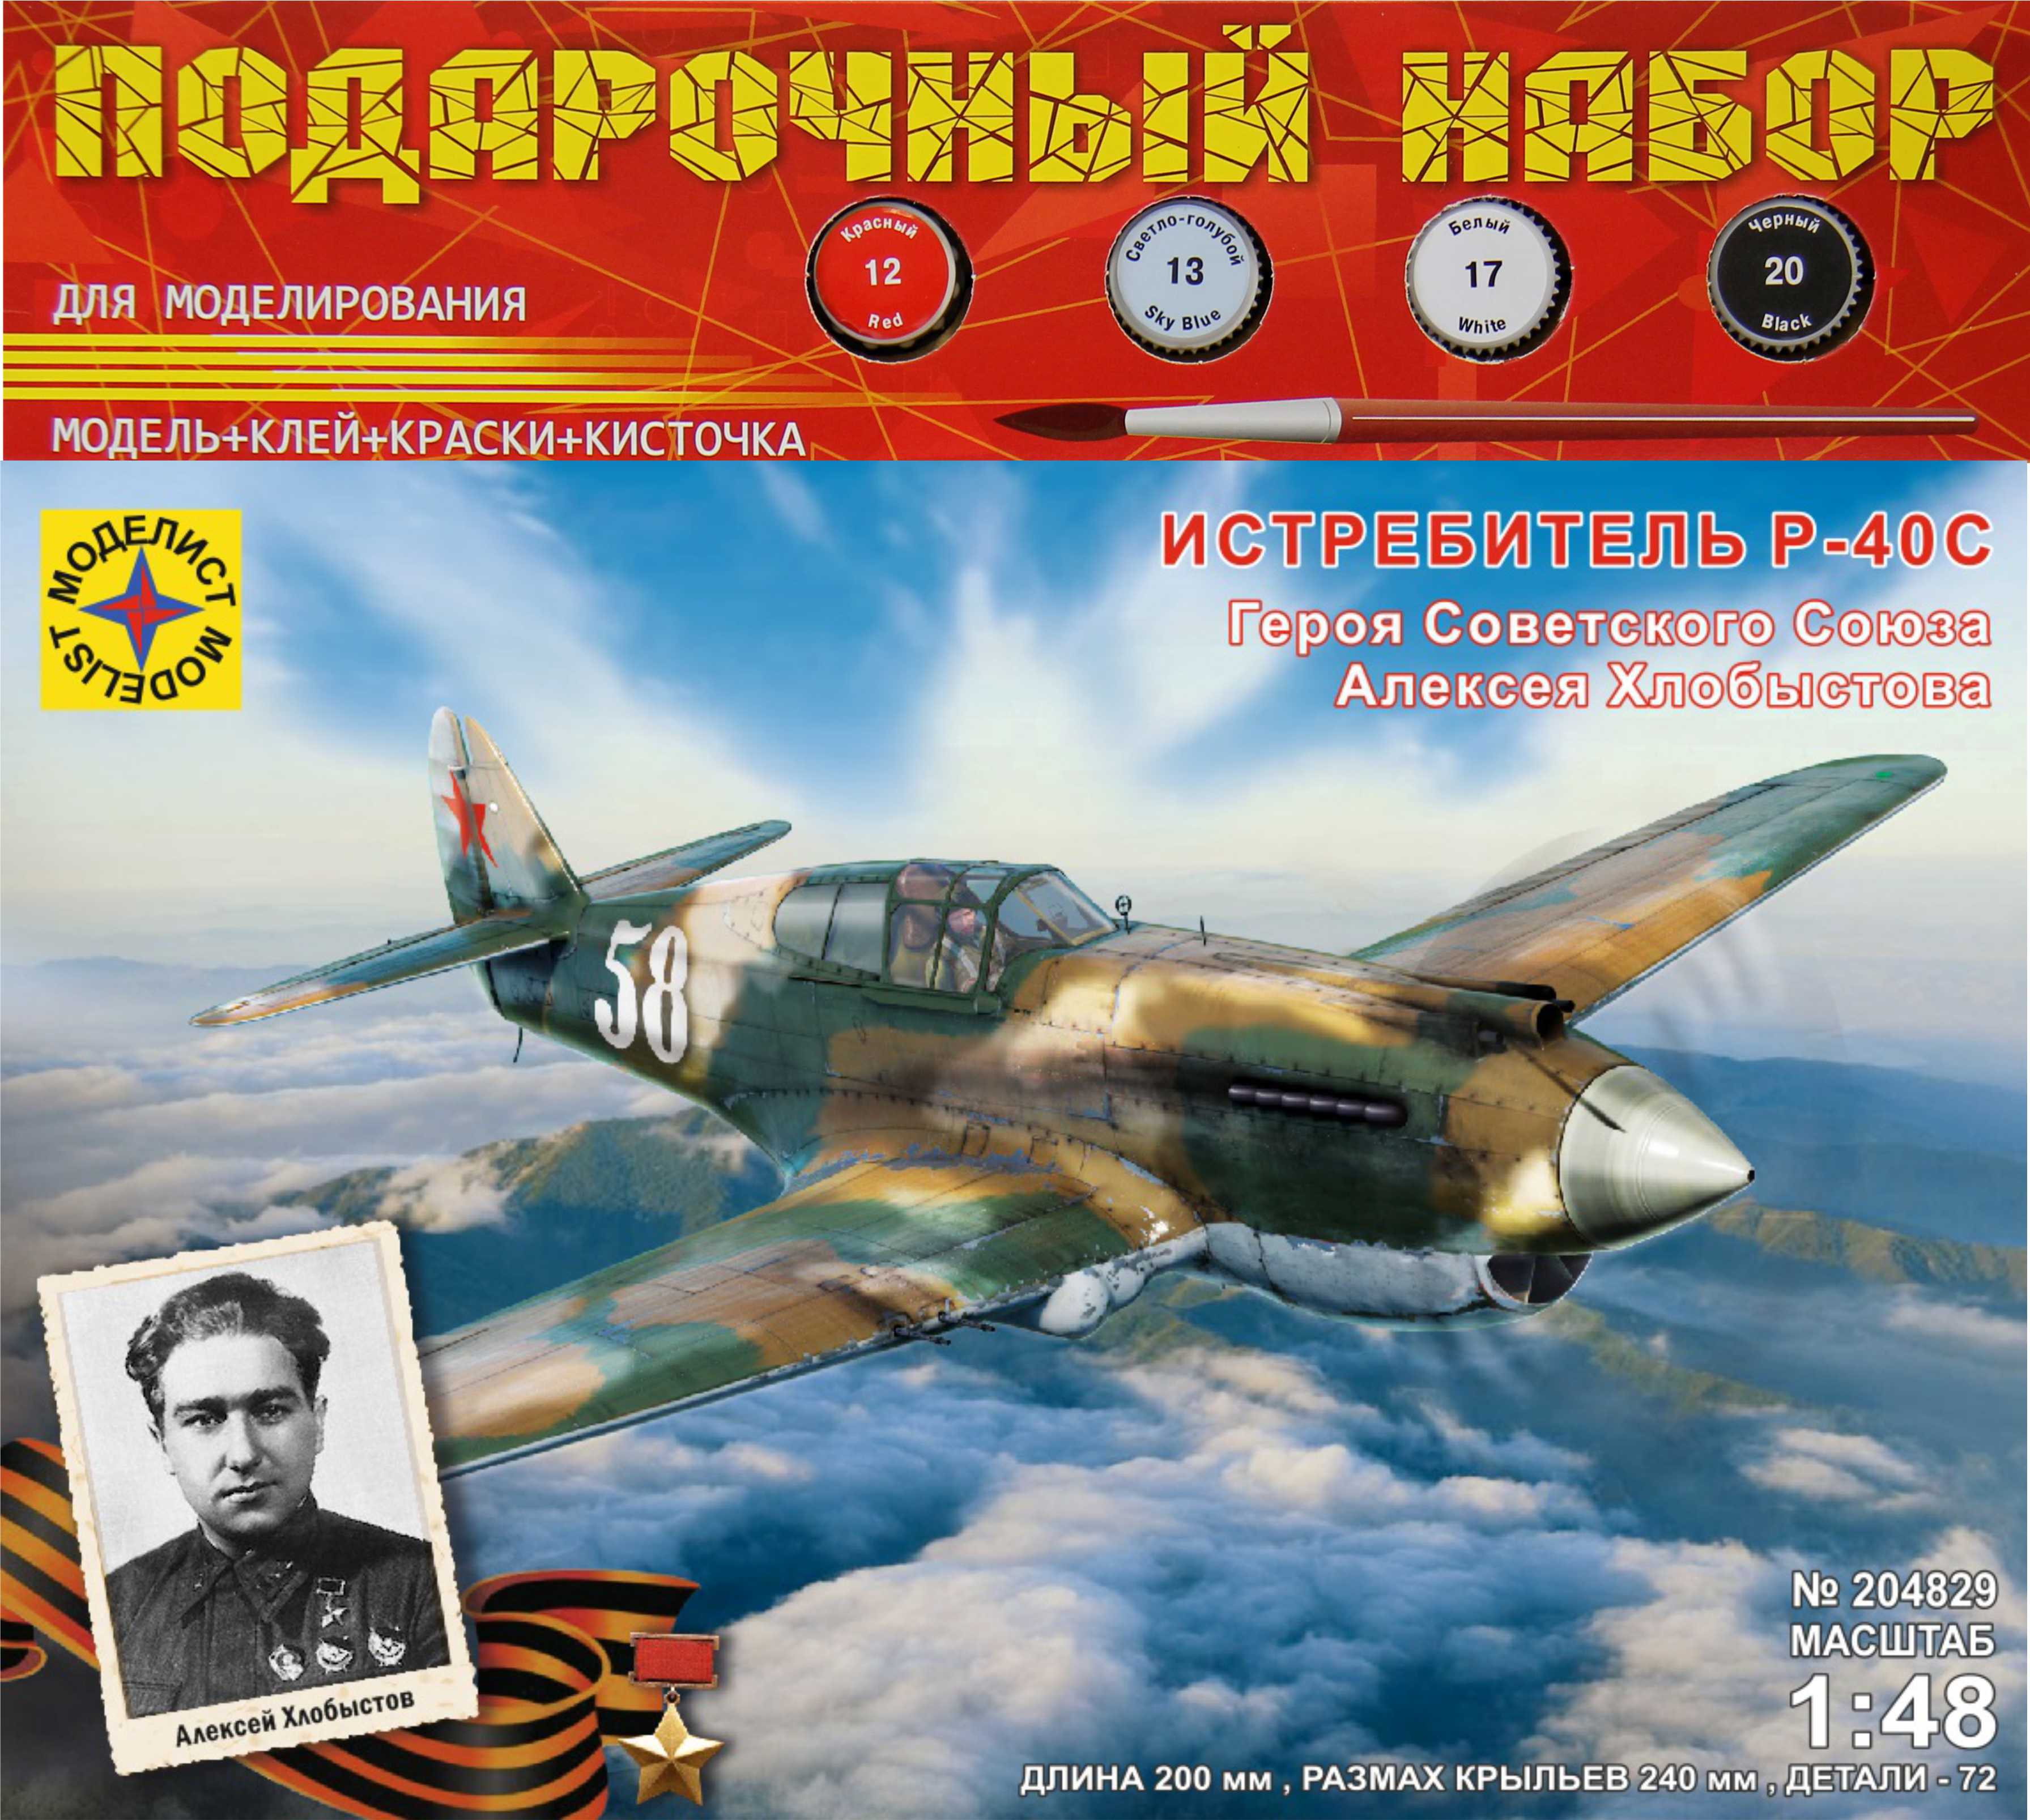 ПН204829  авиация  Истребитель P-40C Героя Советского Союза Алексея Хлобыстова  (1:48)